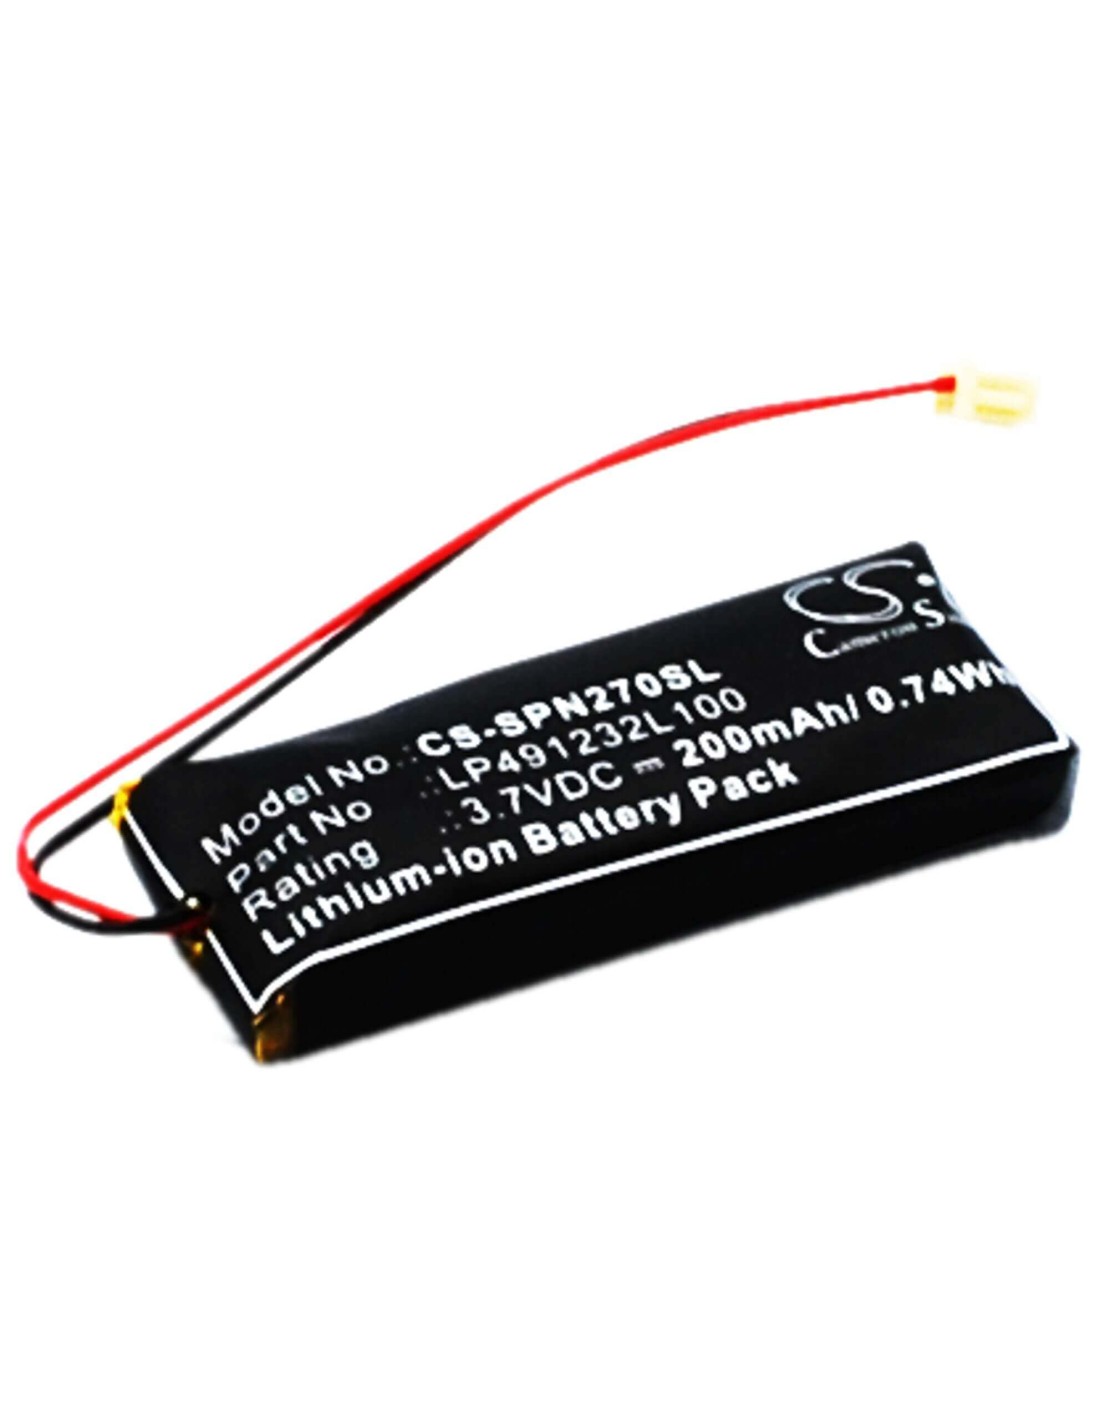 Battery for Sony Psp-n270, Psp-n270g 3.7V, 200mAh - 0.74Wh